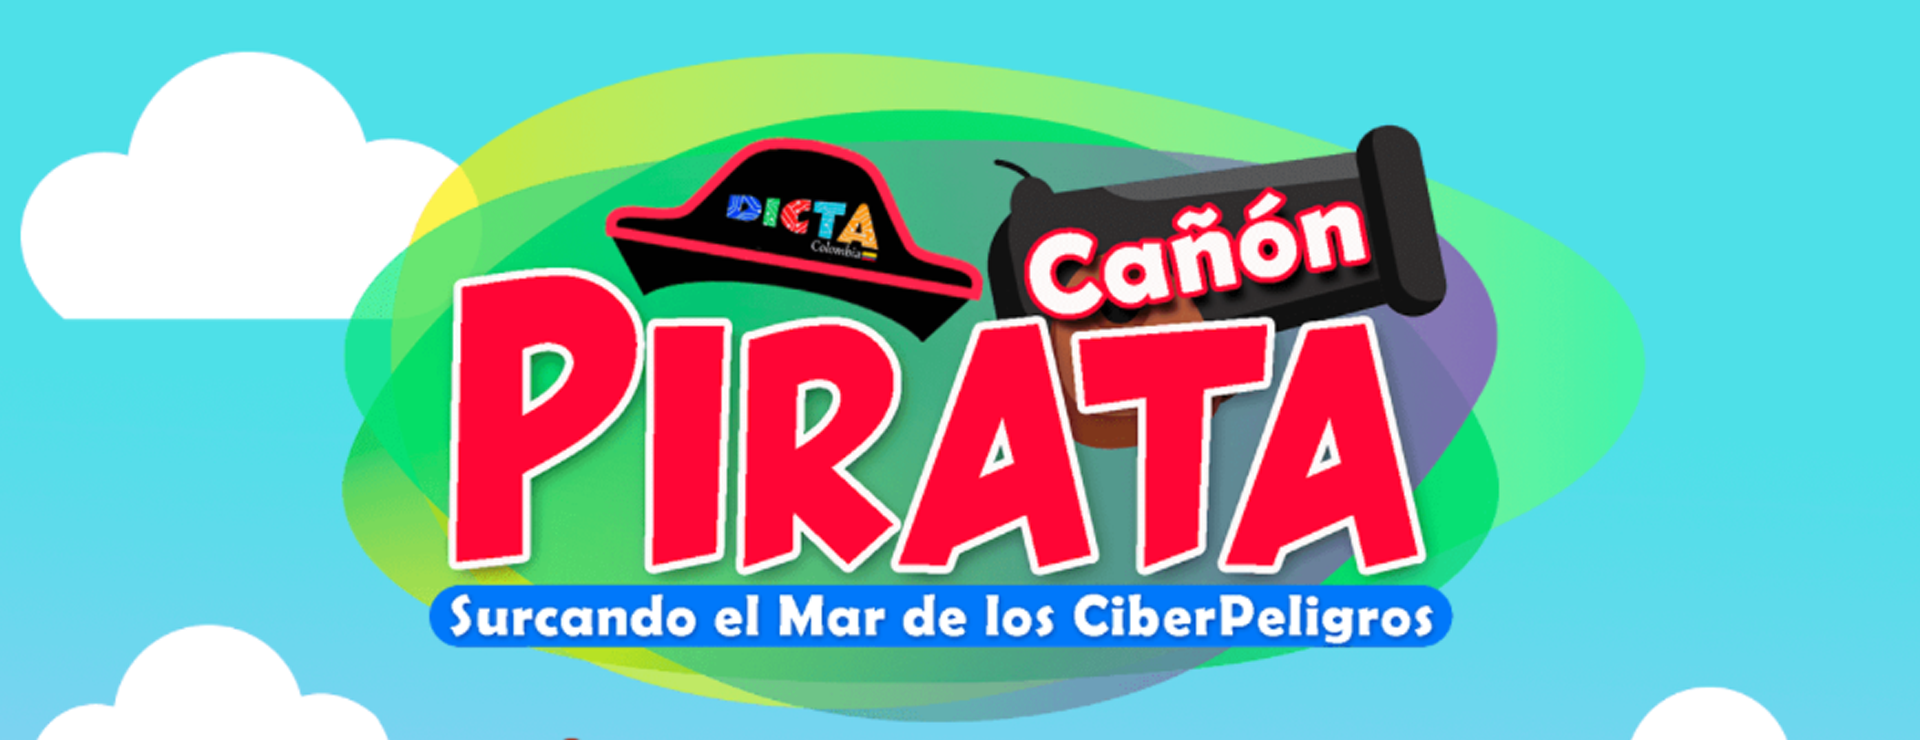 Cañón Pirata